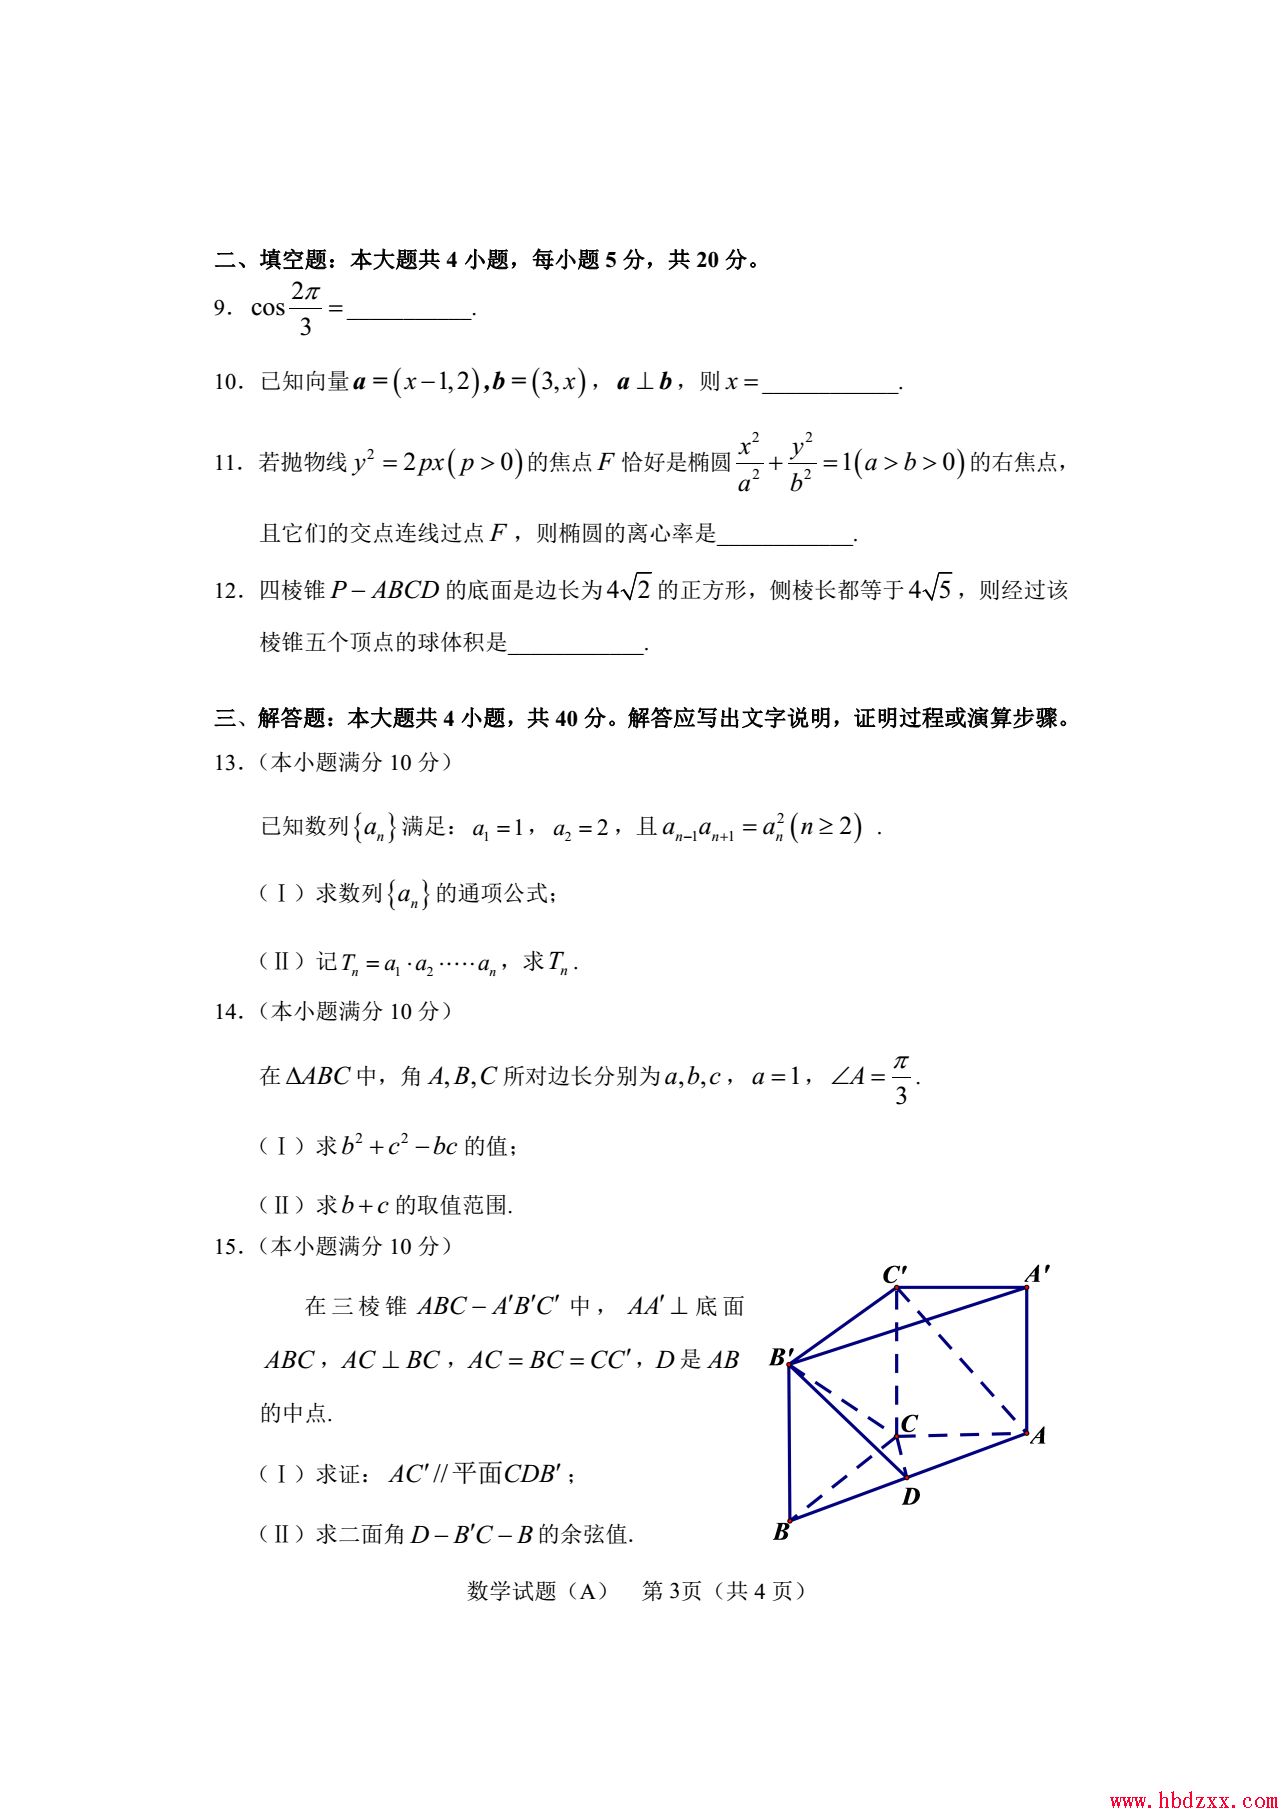 石家庄铁路职业技术学院2013年数学单招试题 图3